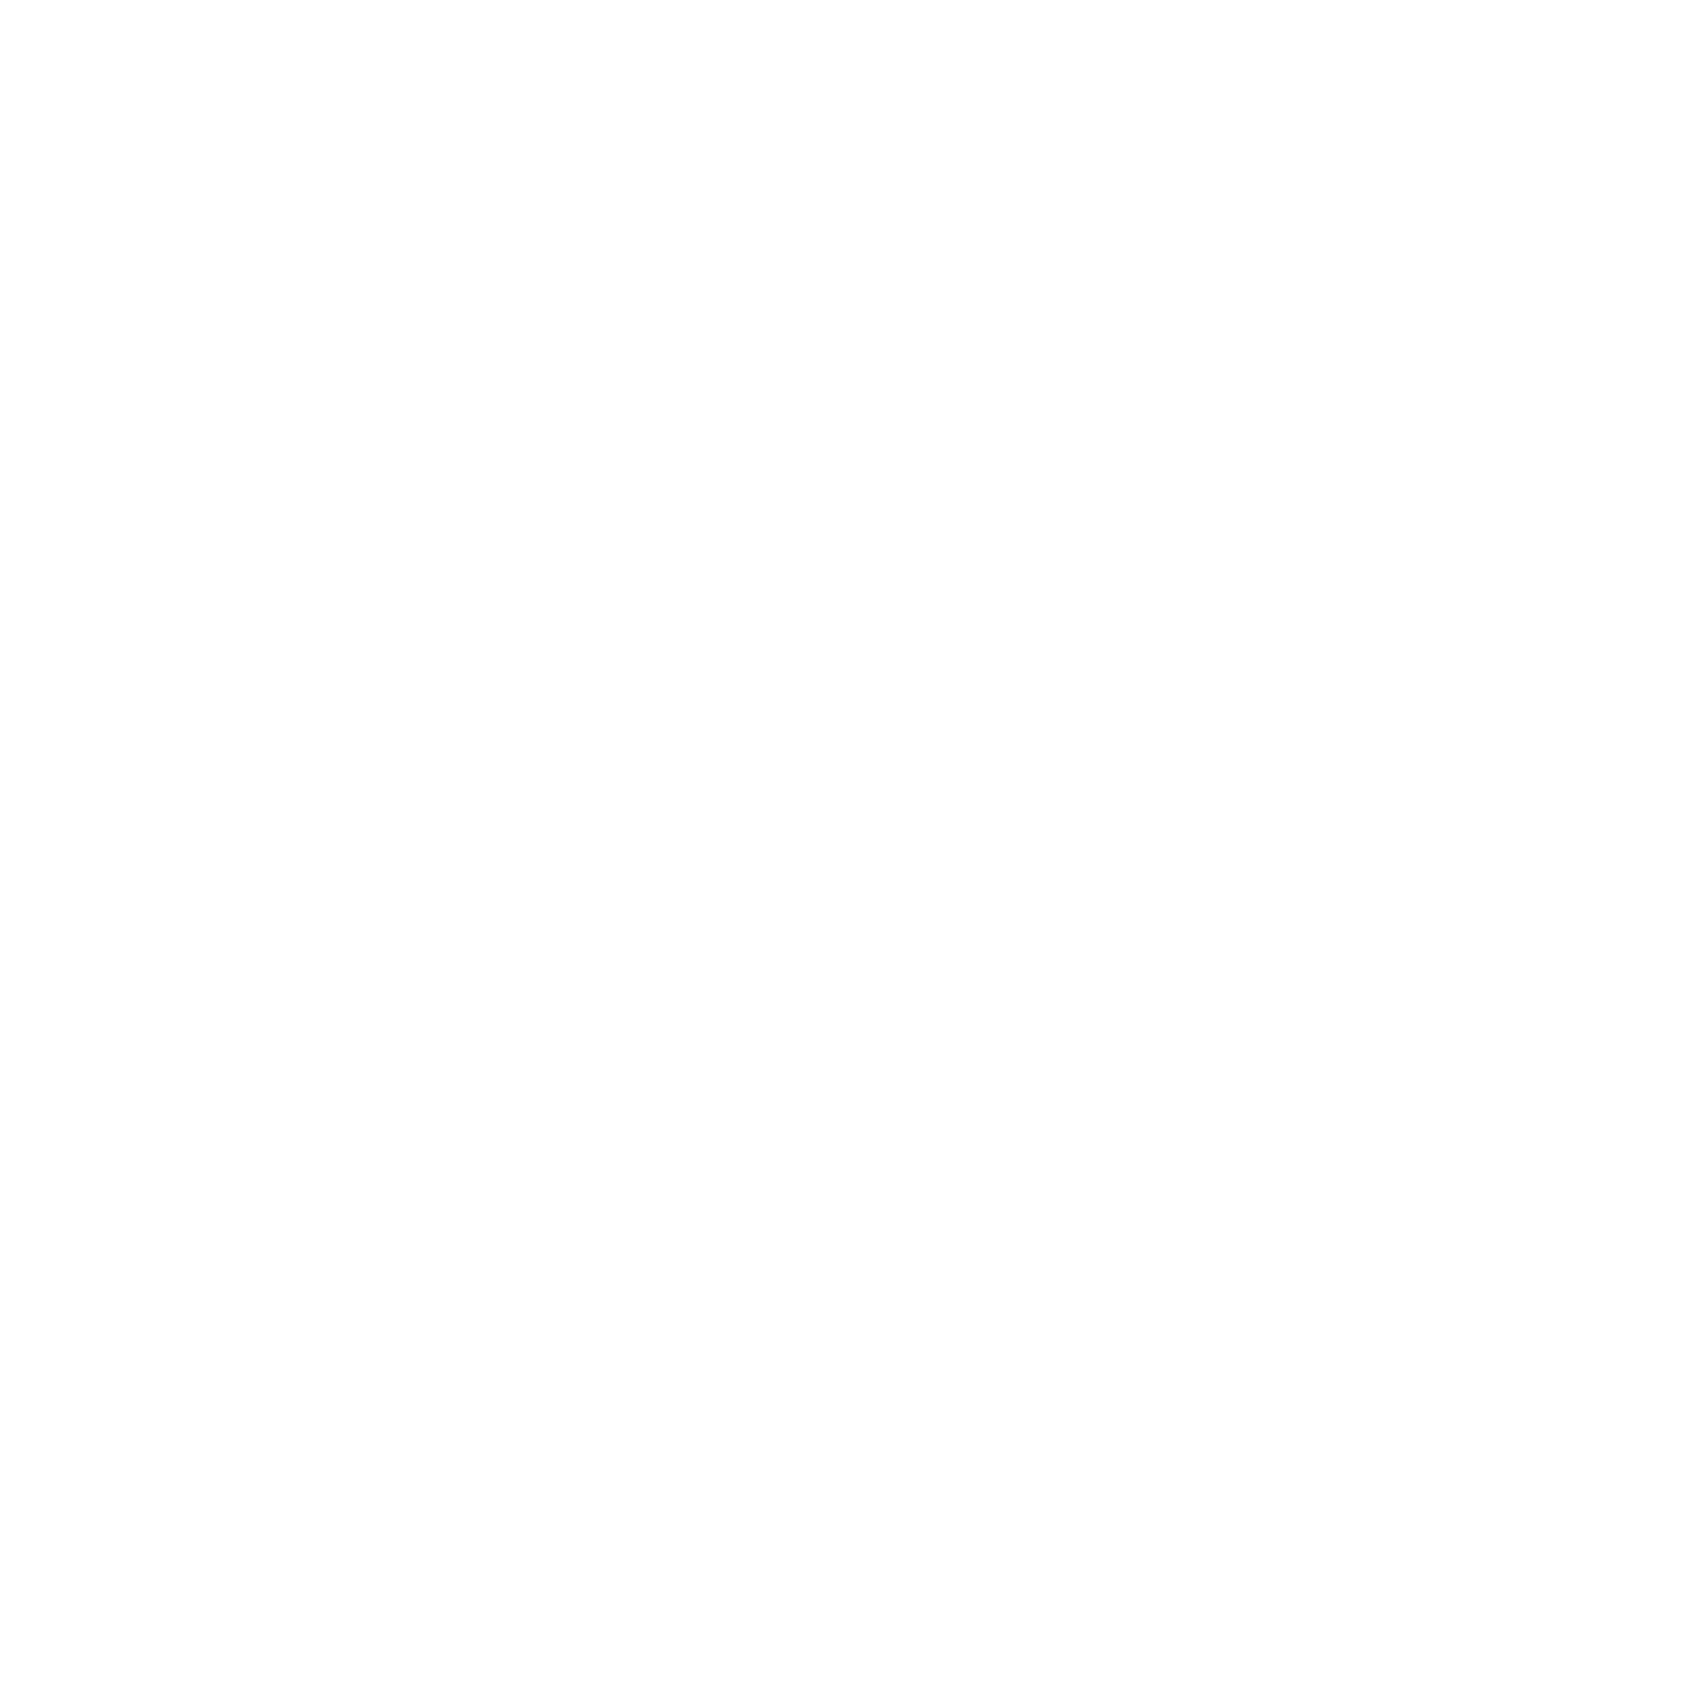 Coal Mining Assessments - Twitter Logo Black On White (1704x1704)